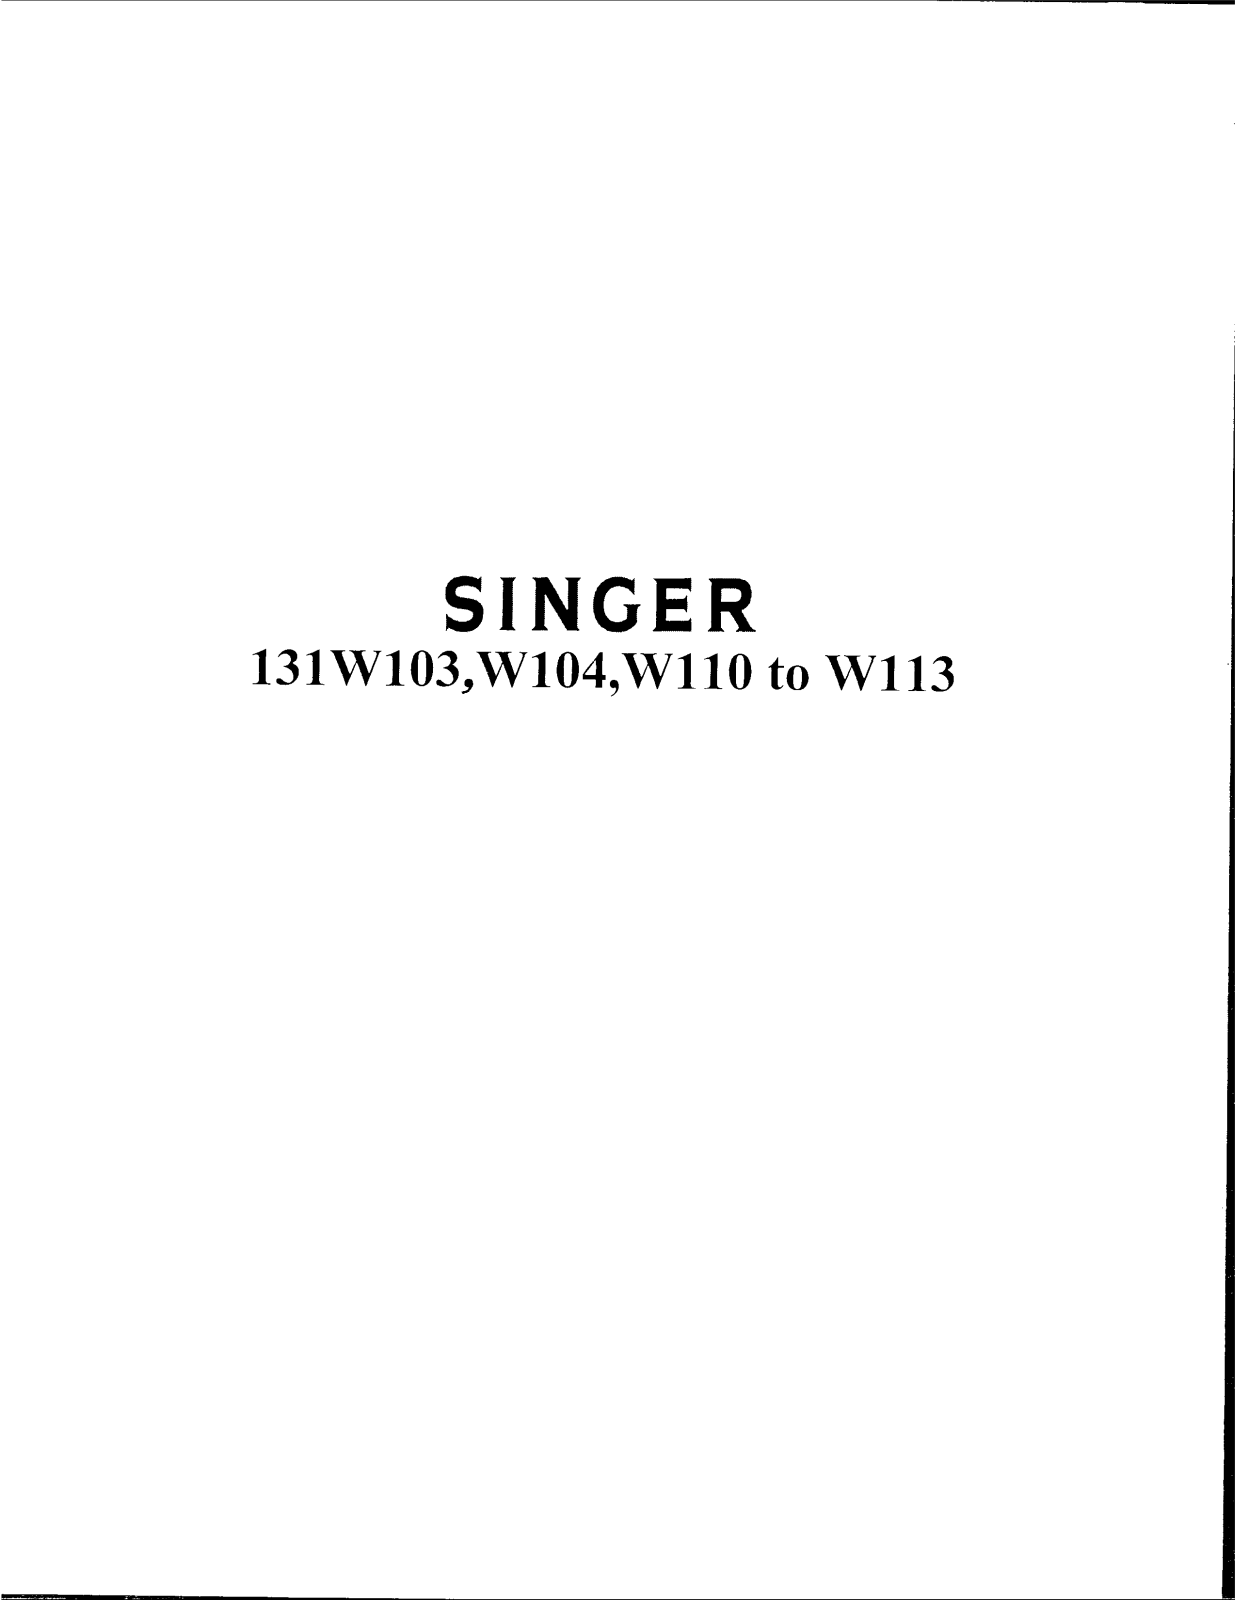 Singer 113W111, 113W110, 113W104, 113W113, 131W103 Instruction Manual